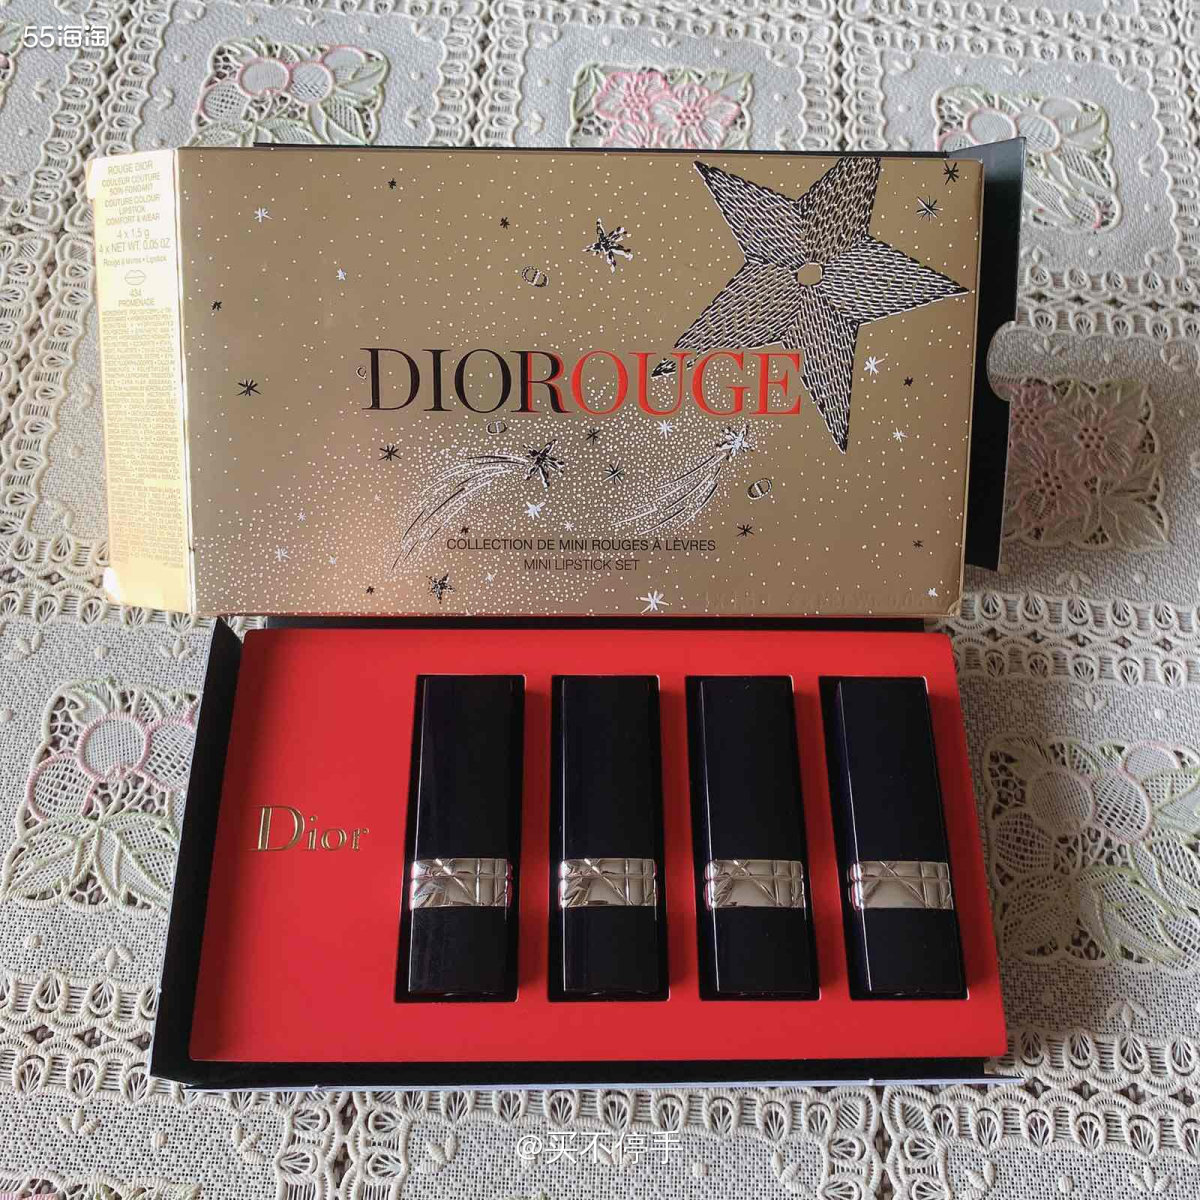 #55海淘奖品秀# Dior 口红套装 感谢55海淘，我终于